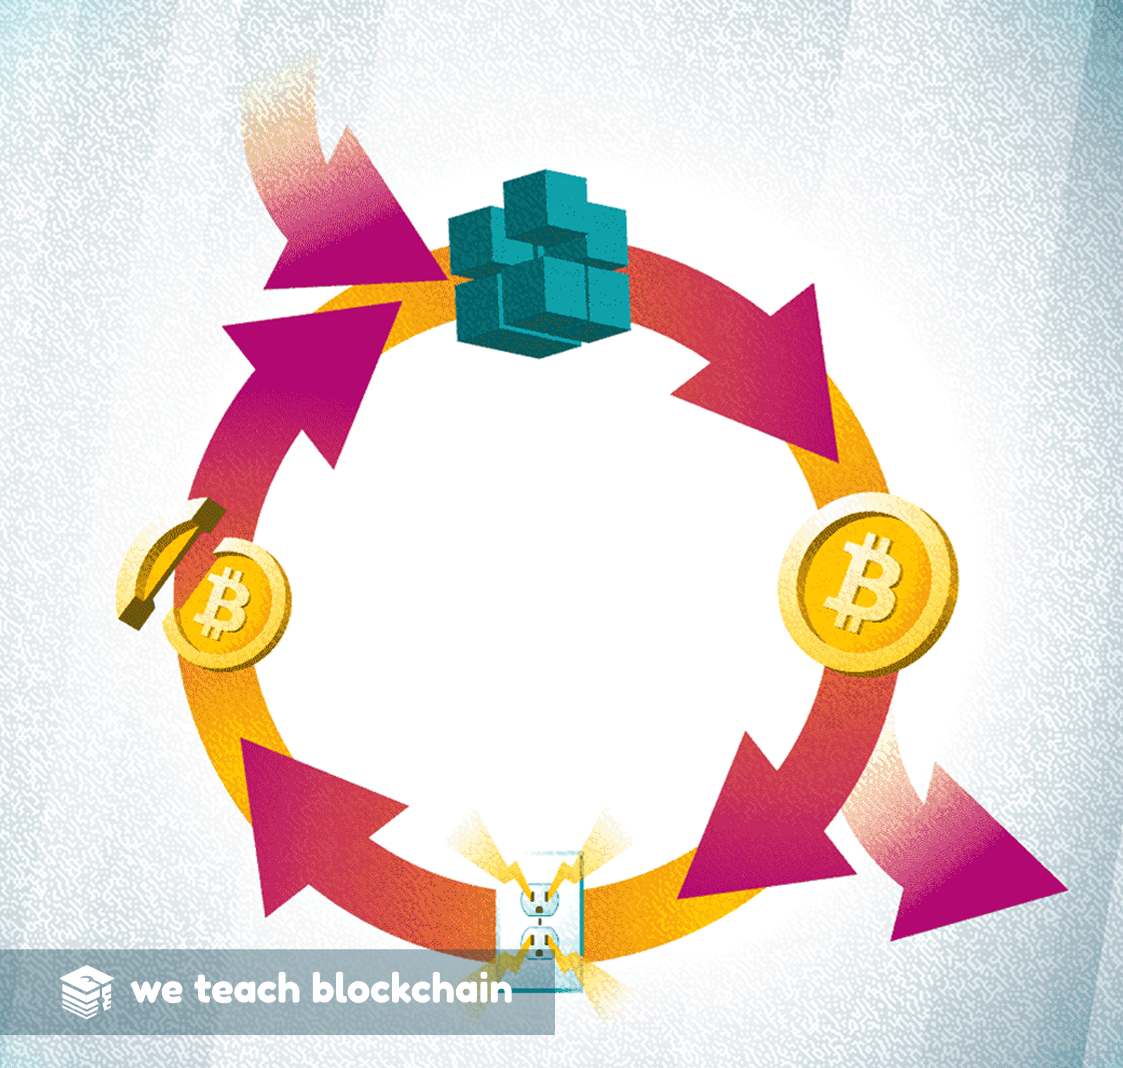 Bitcoin feedback cycle